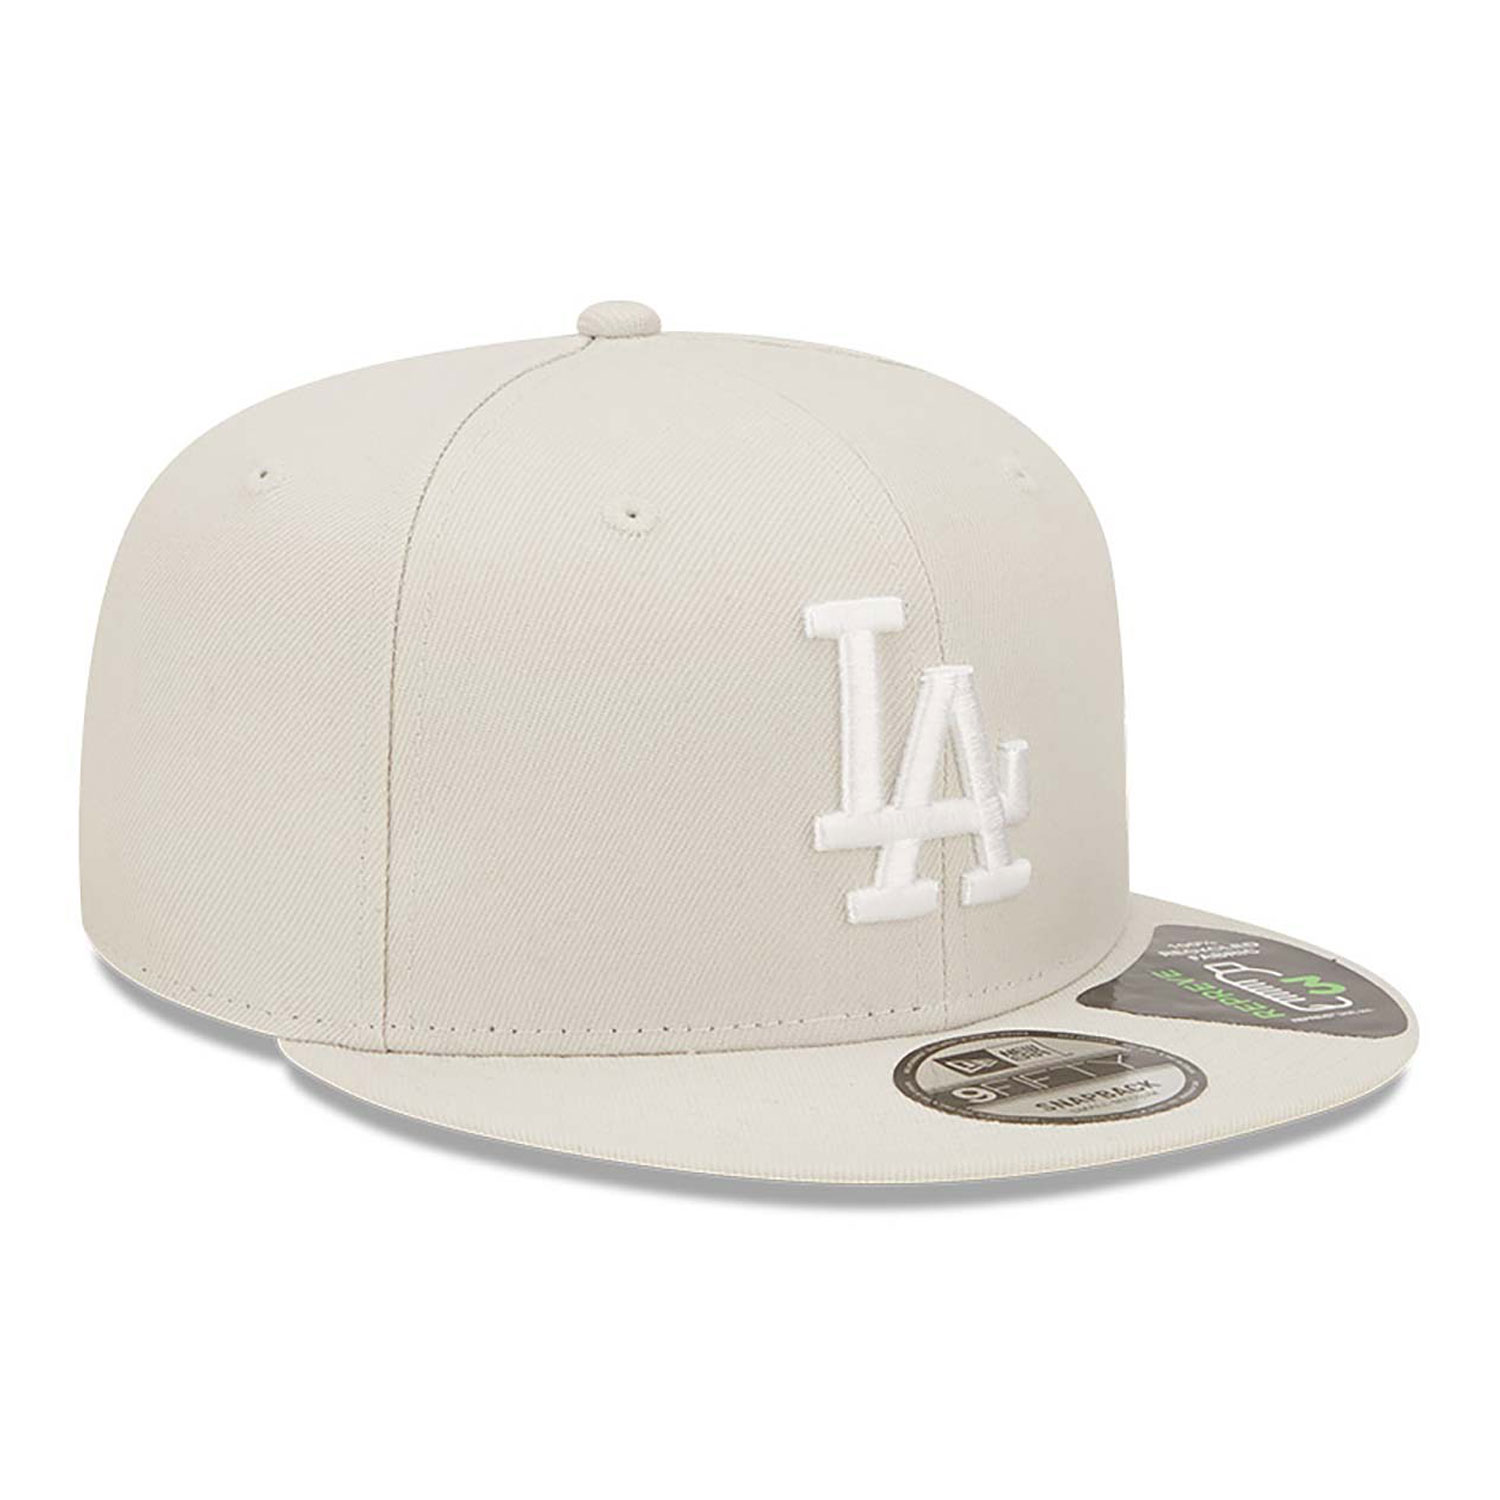 LA Dodgers Repreve Cream 9FIFTY Snapback Cap